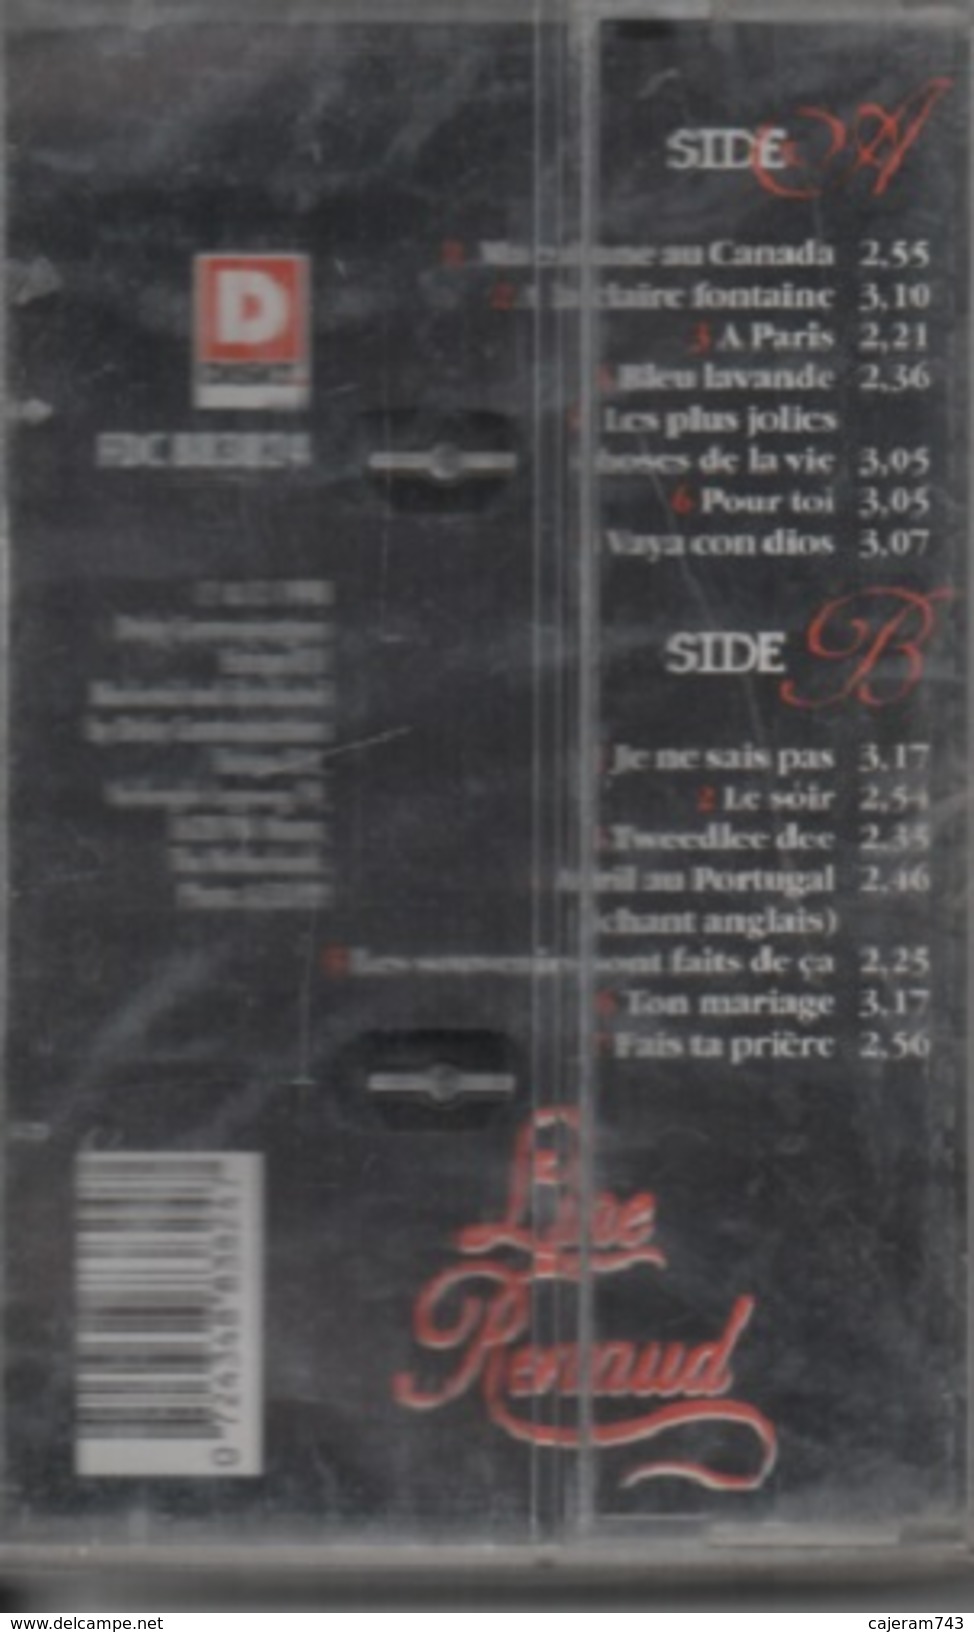 K7 Audio. Line RENAUD. Les Meilleurs - NEUVE Sous Cellophane - 14 Titres. - Cassette